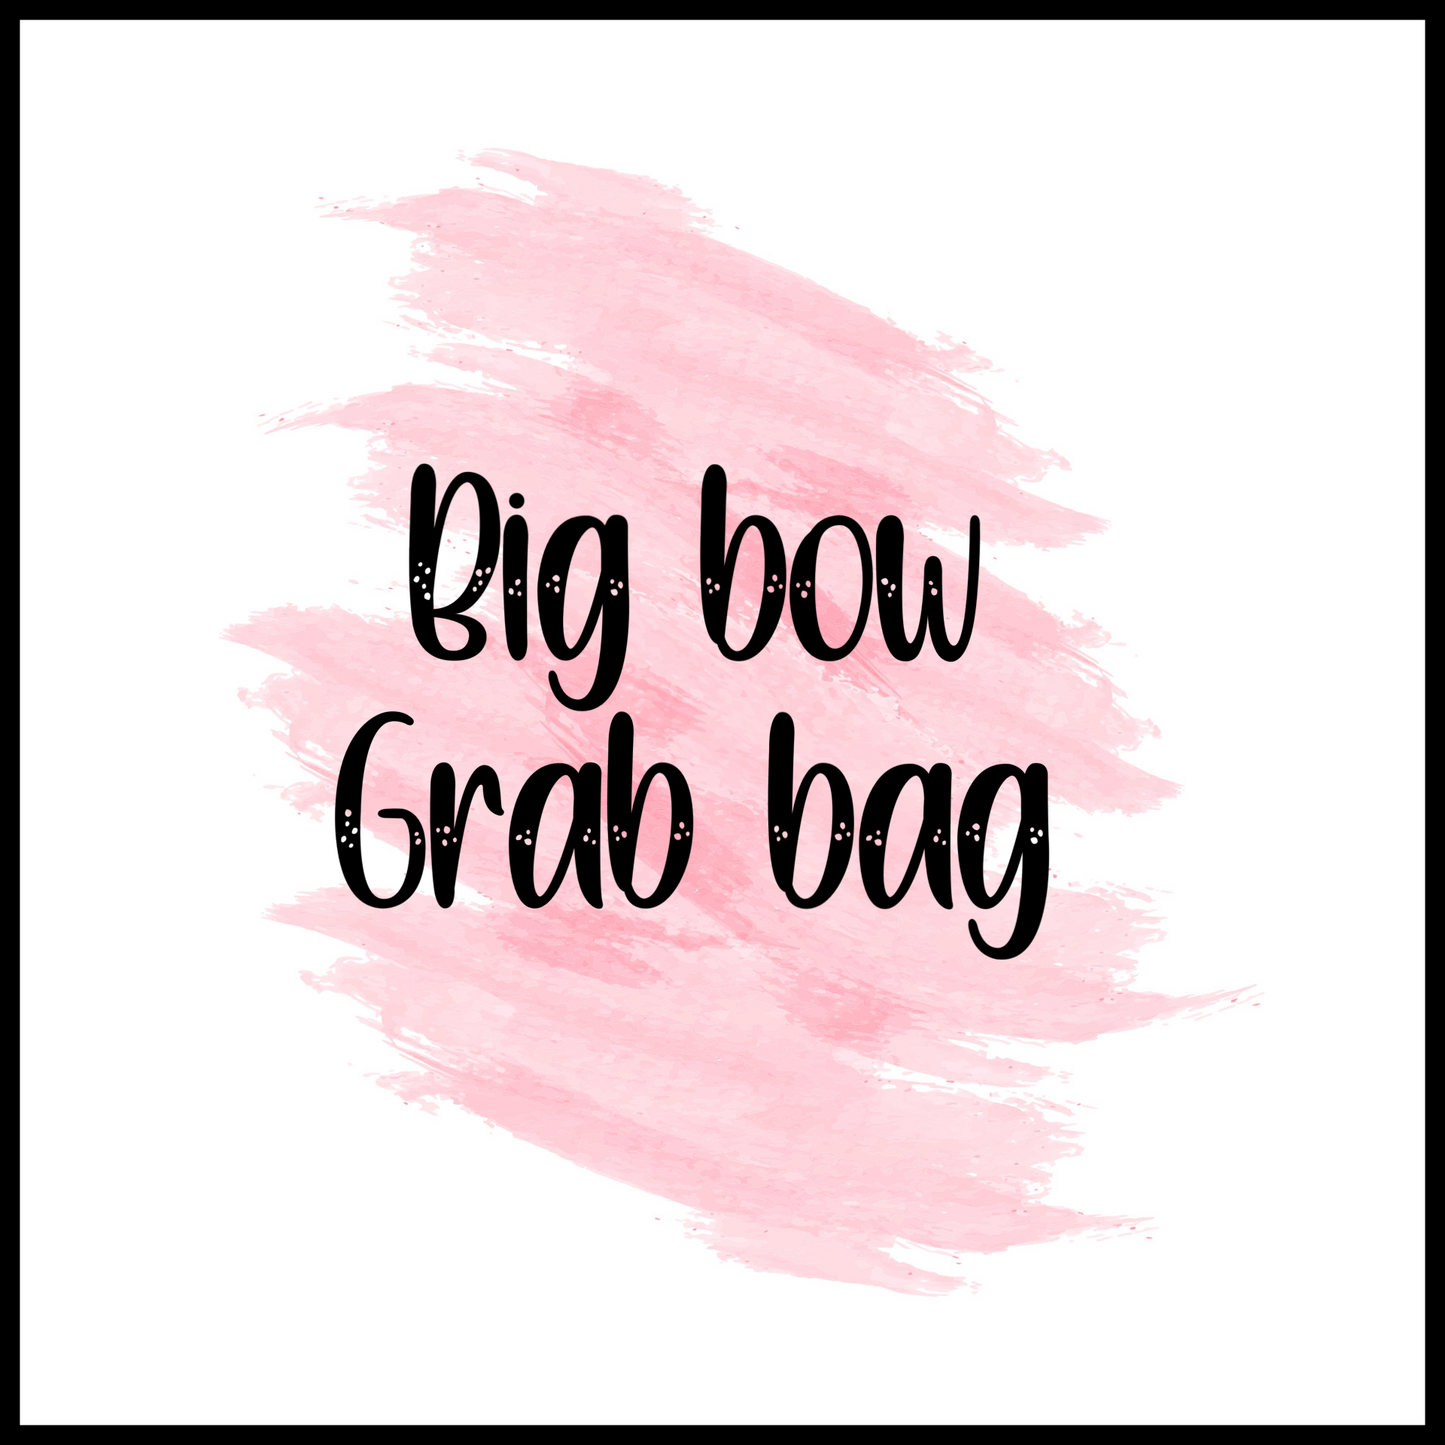 Big bows grab bag